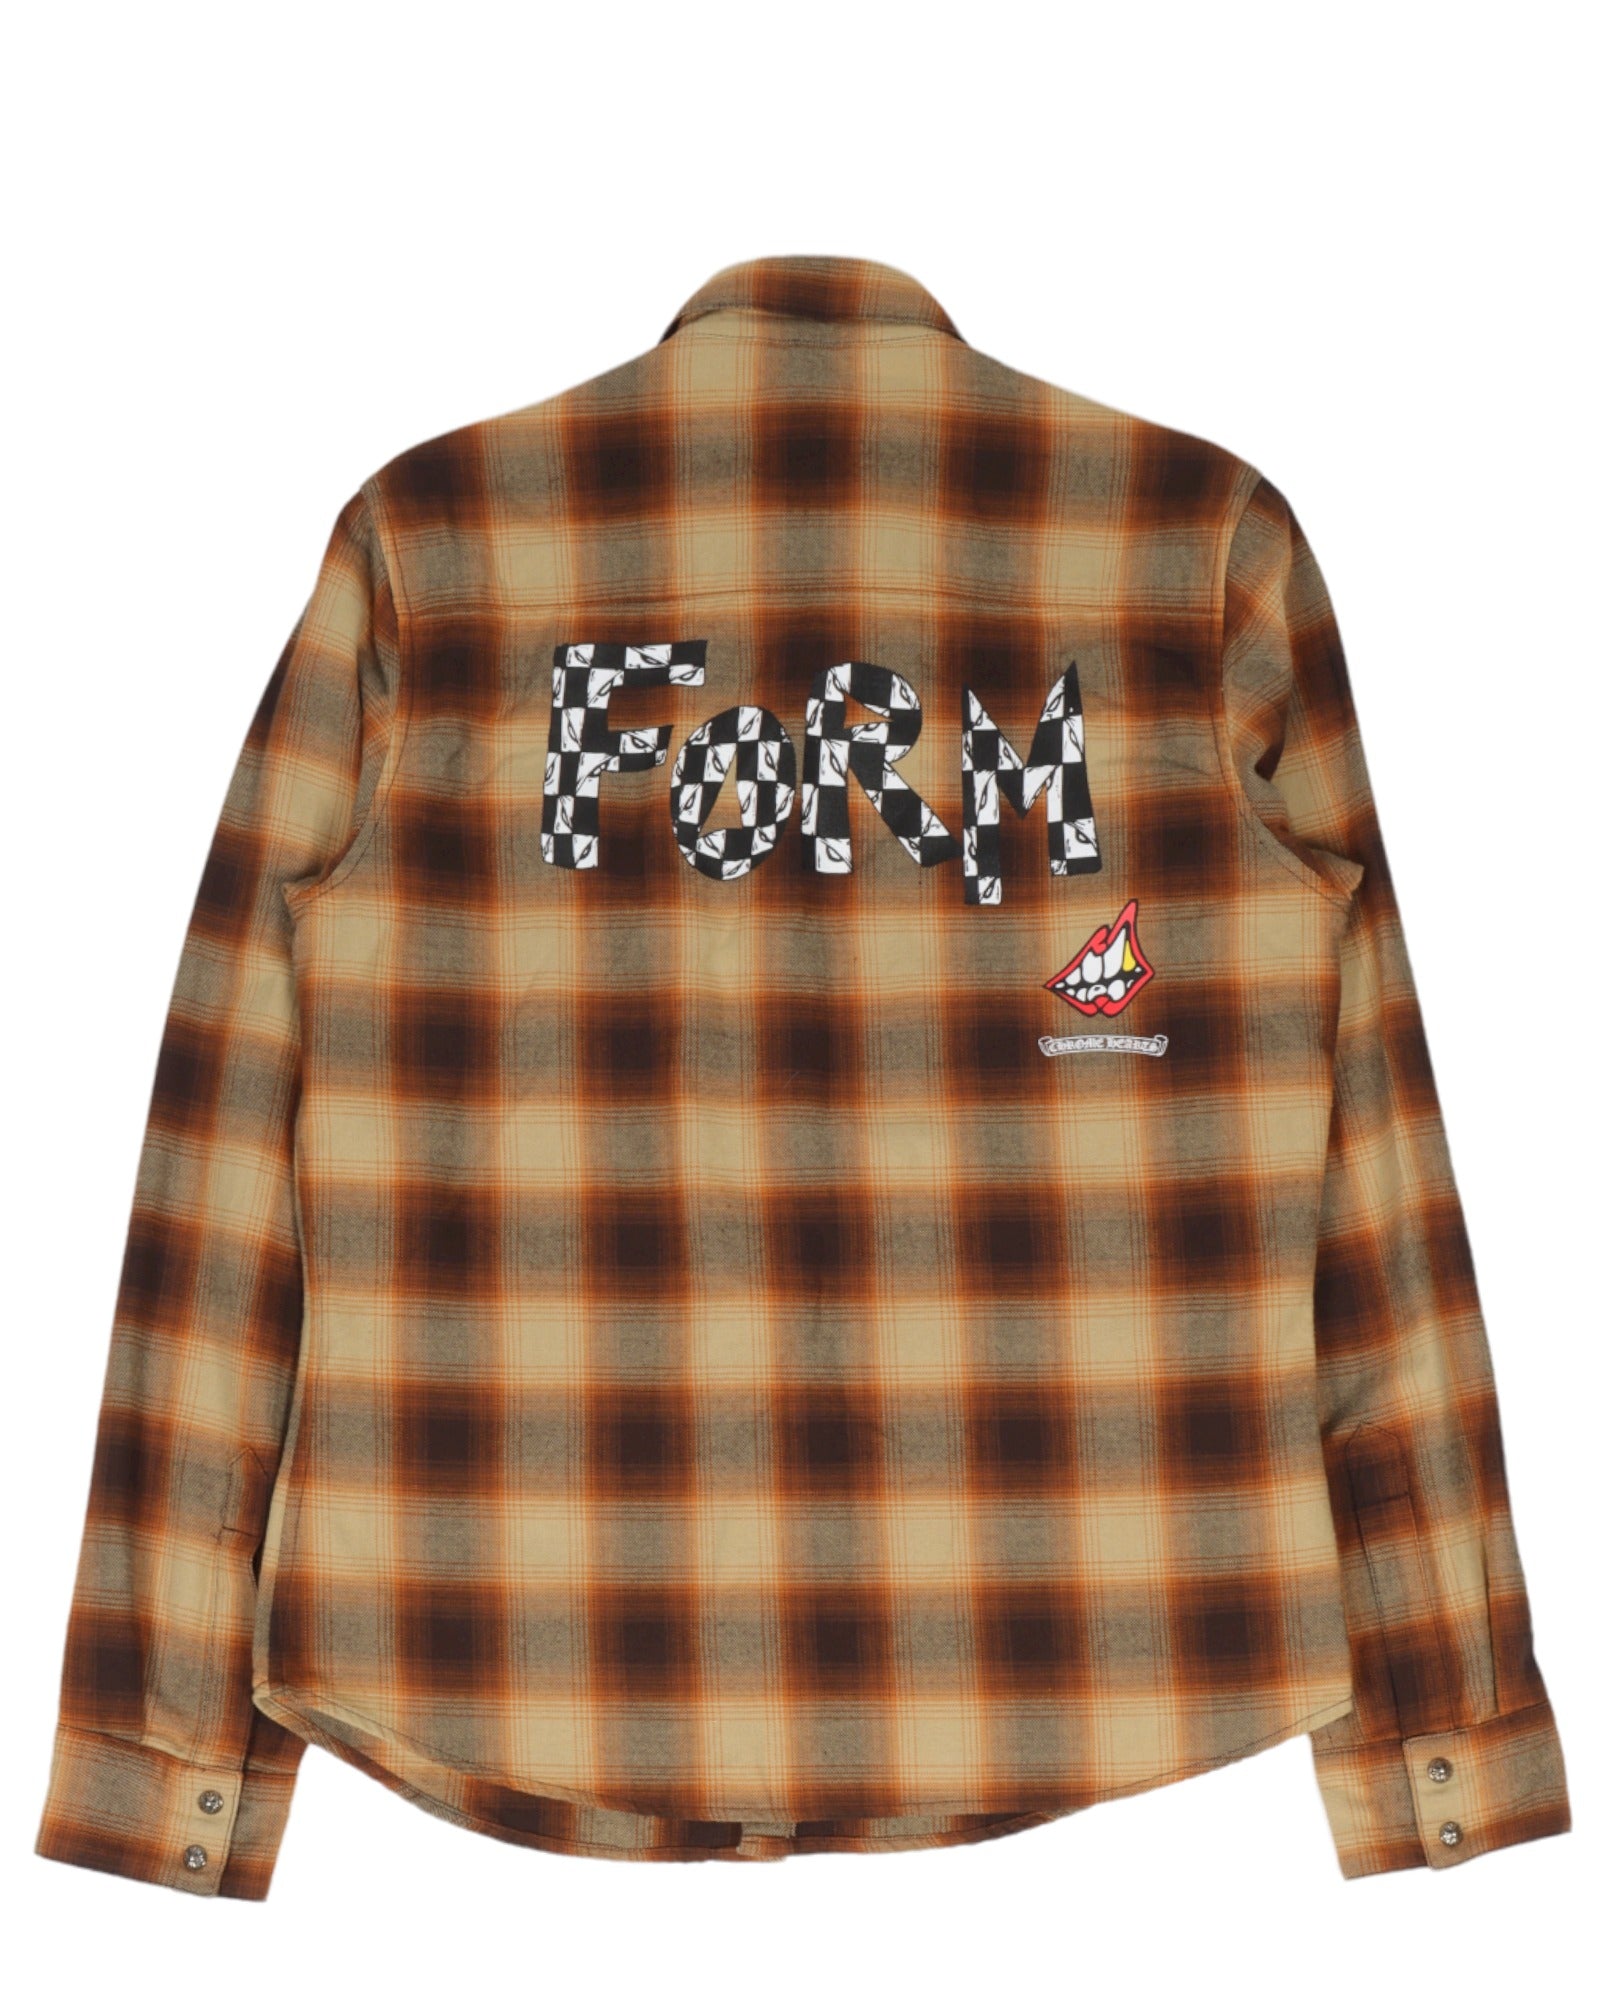 Matty Boy "FORM" Wool-Blend Plaid Flannel